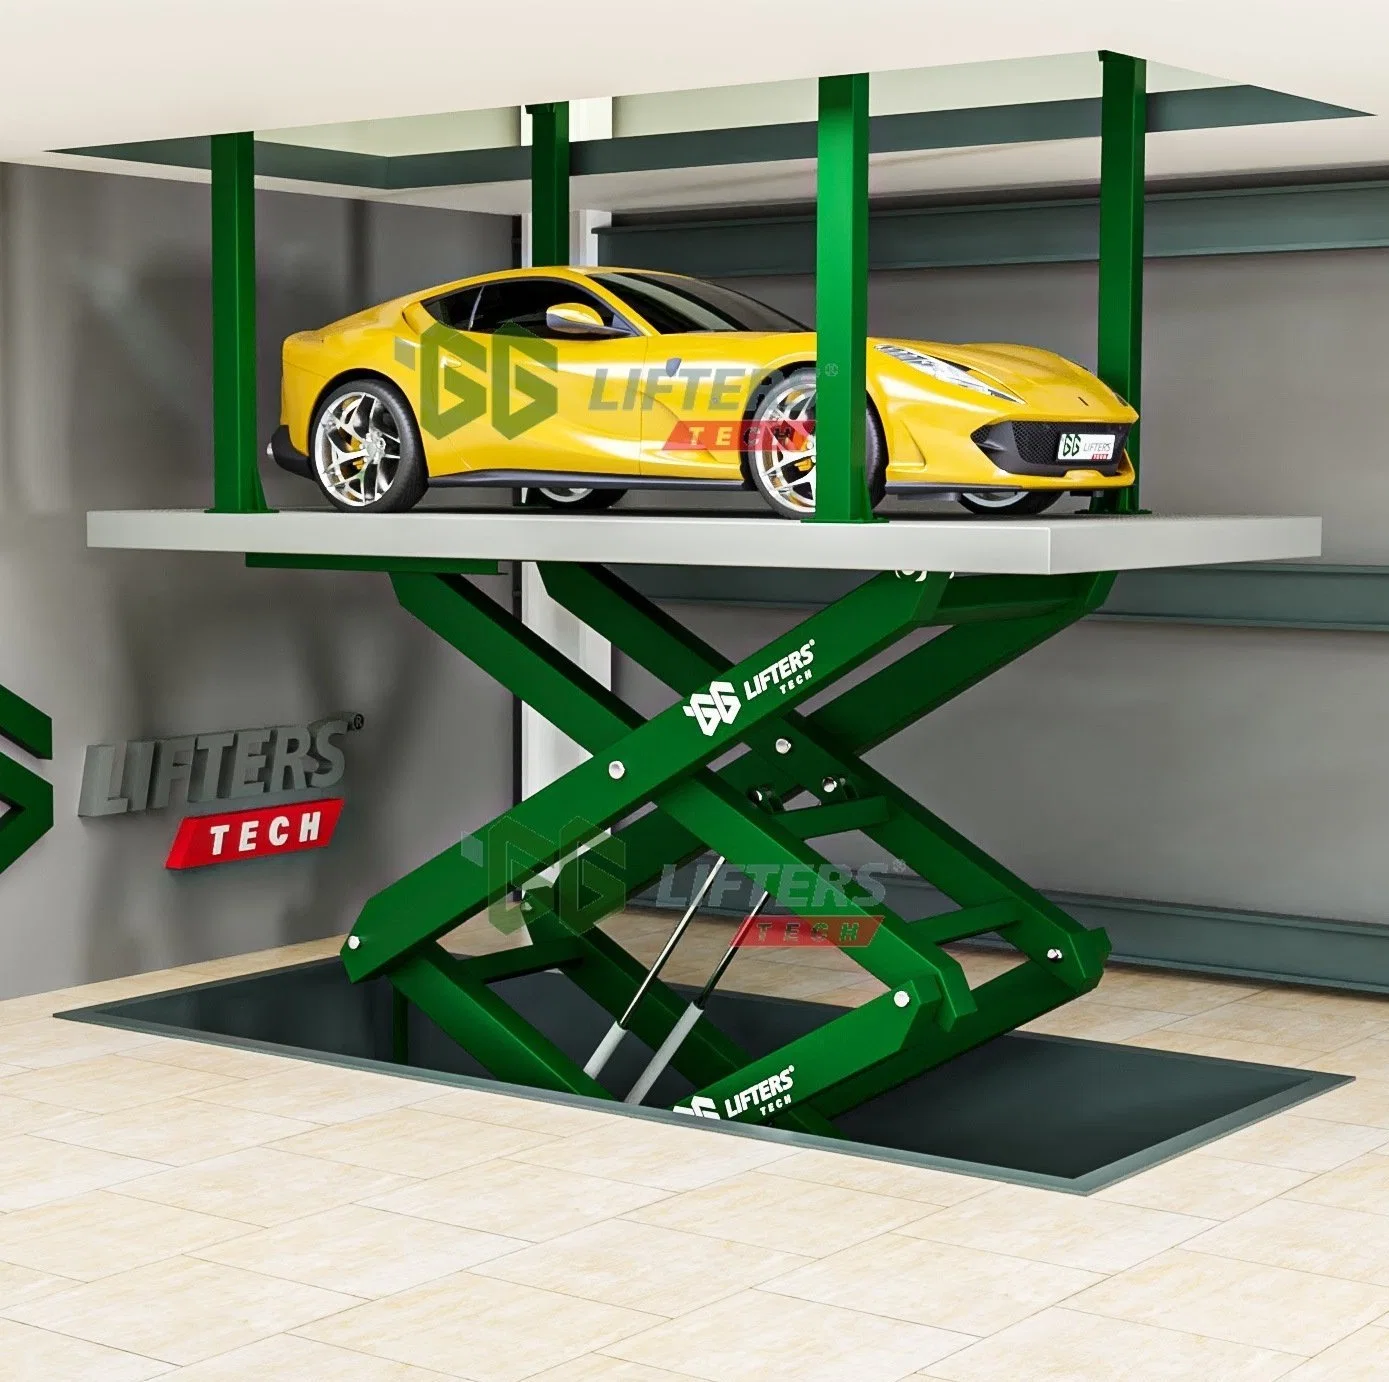 scissor auto lift underground hidden car parking lift garage equipment parking system